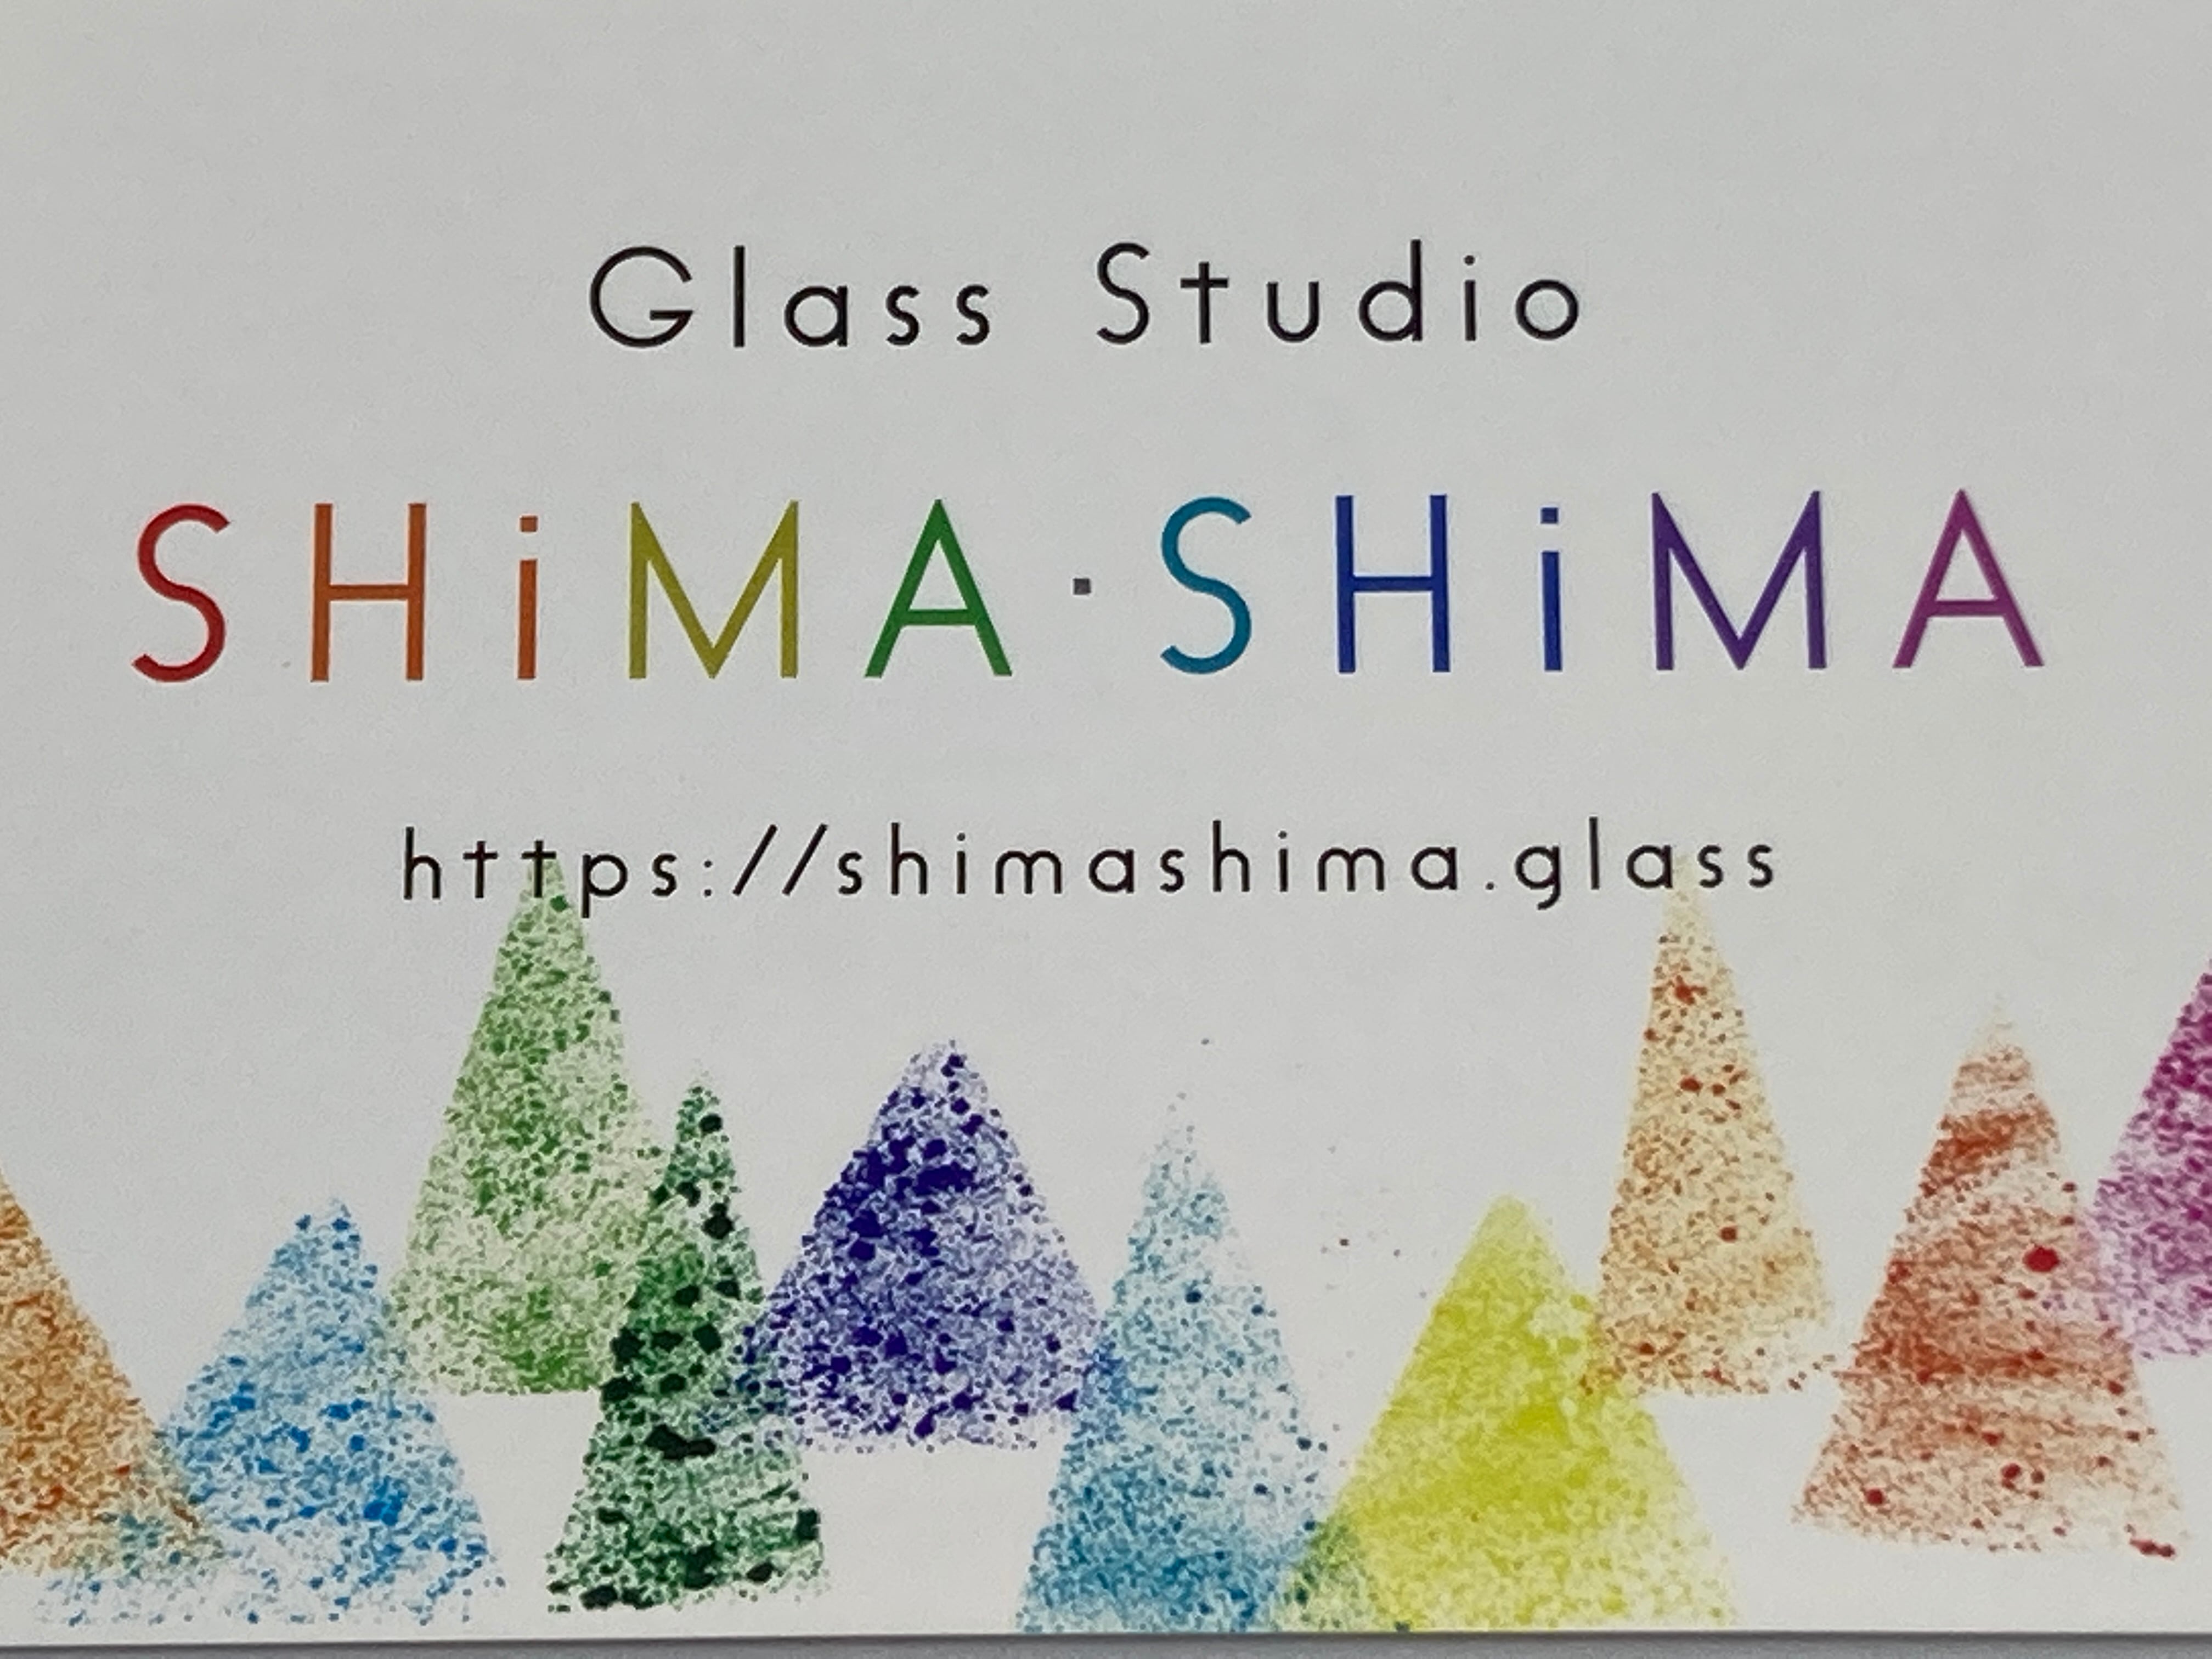 Glass Studio SHiMA・SHiMA